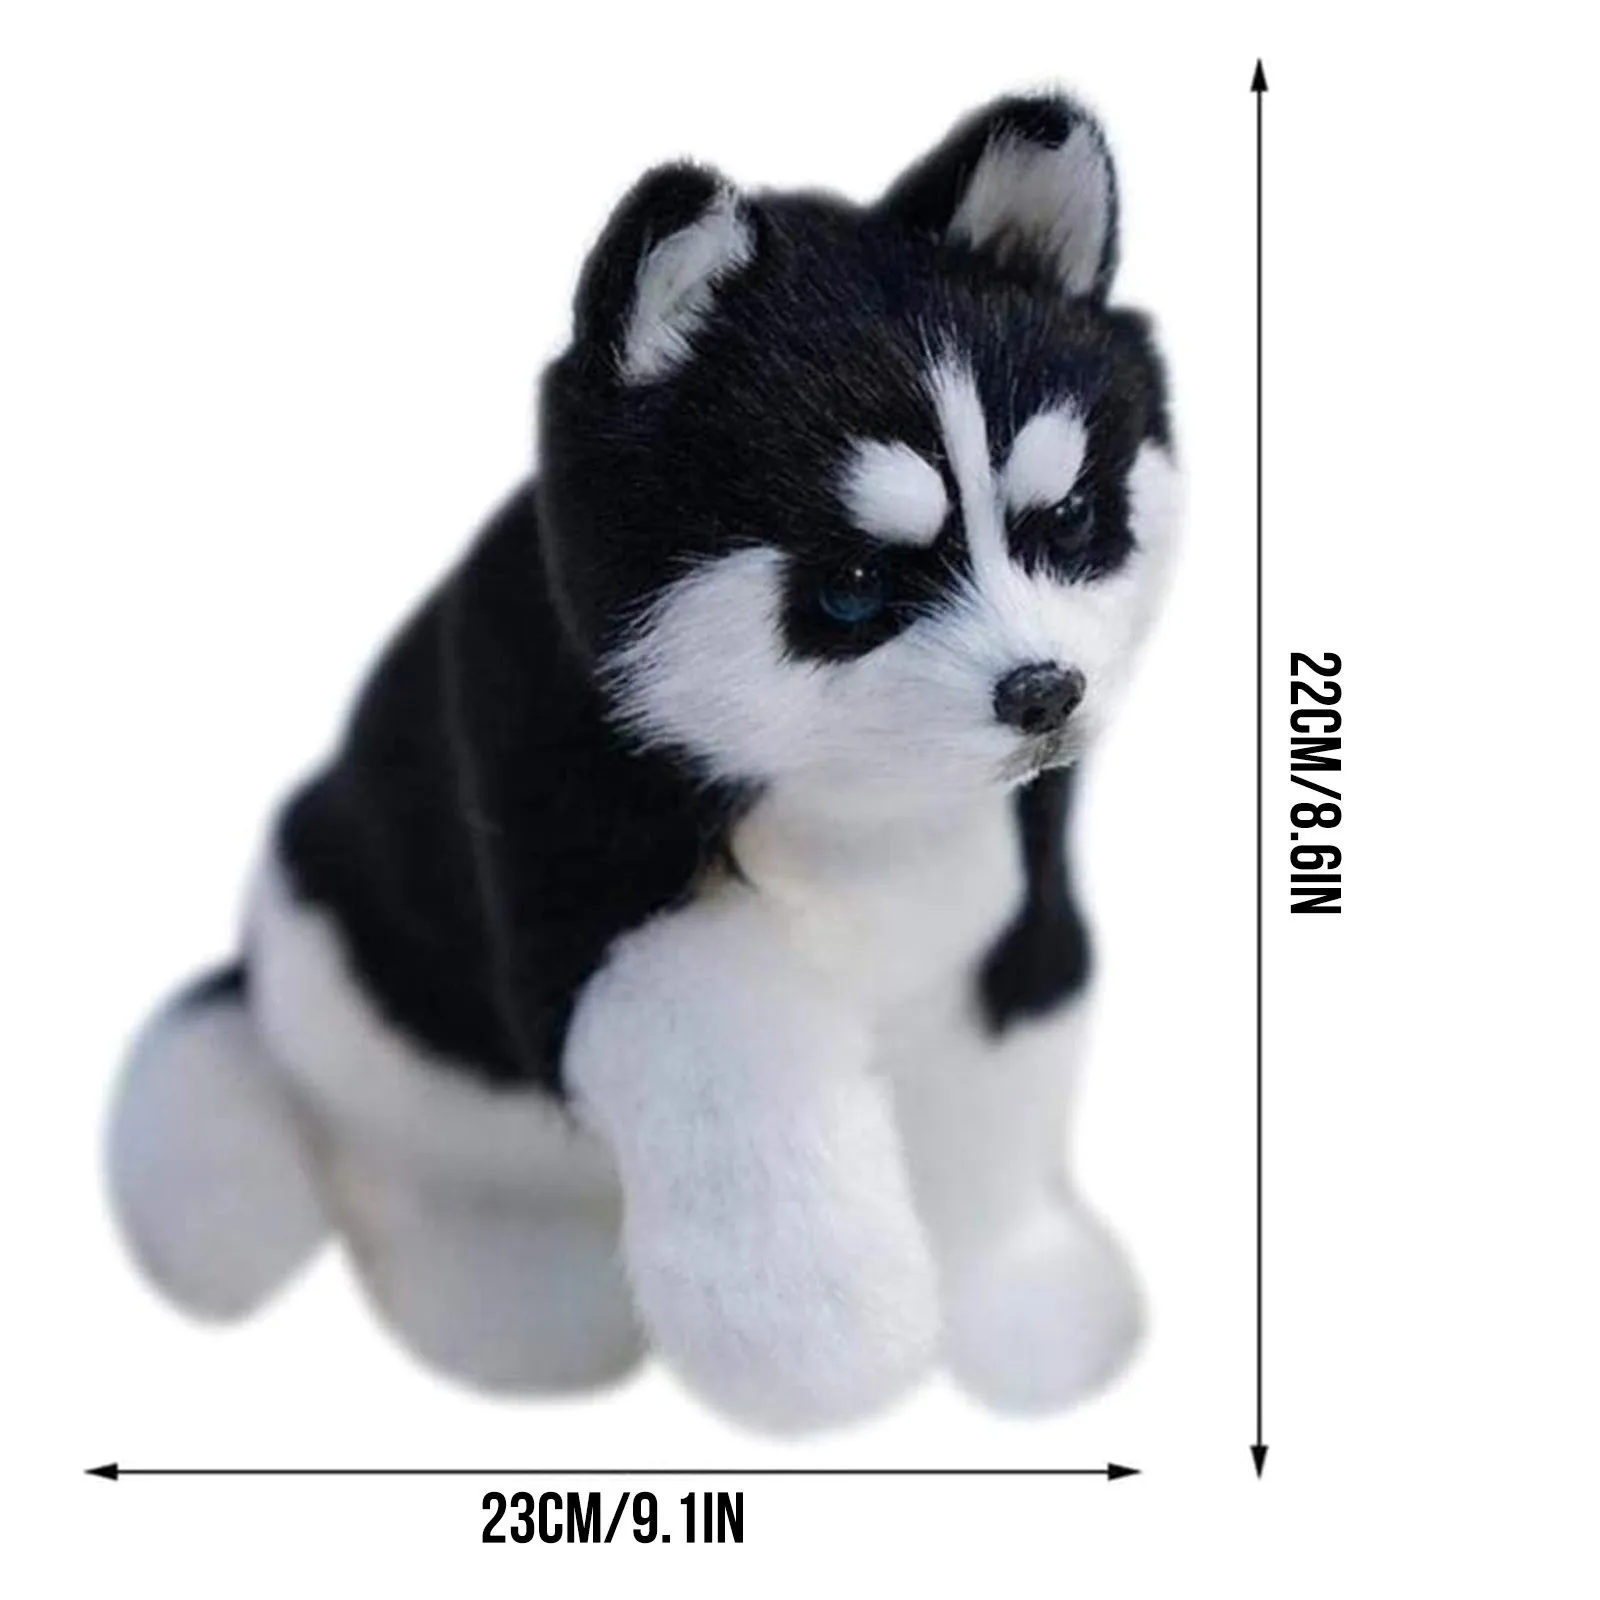 Хъски куче играчка, играчка плюшен имитация на животински модел на децата, подарък kawaii хъски куче котка играчка плюшен L4